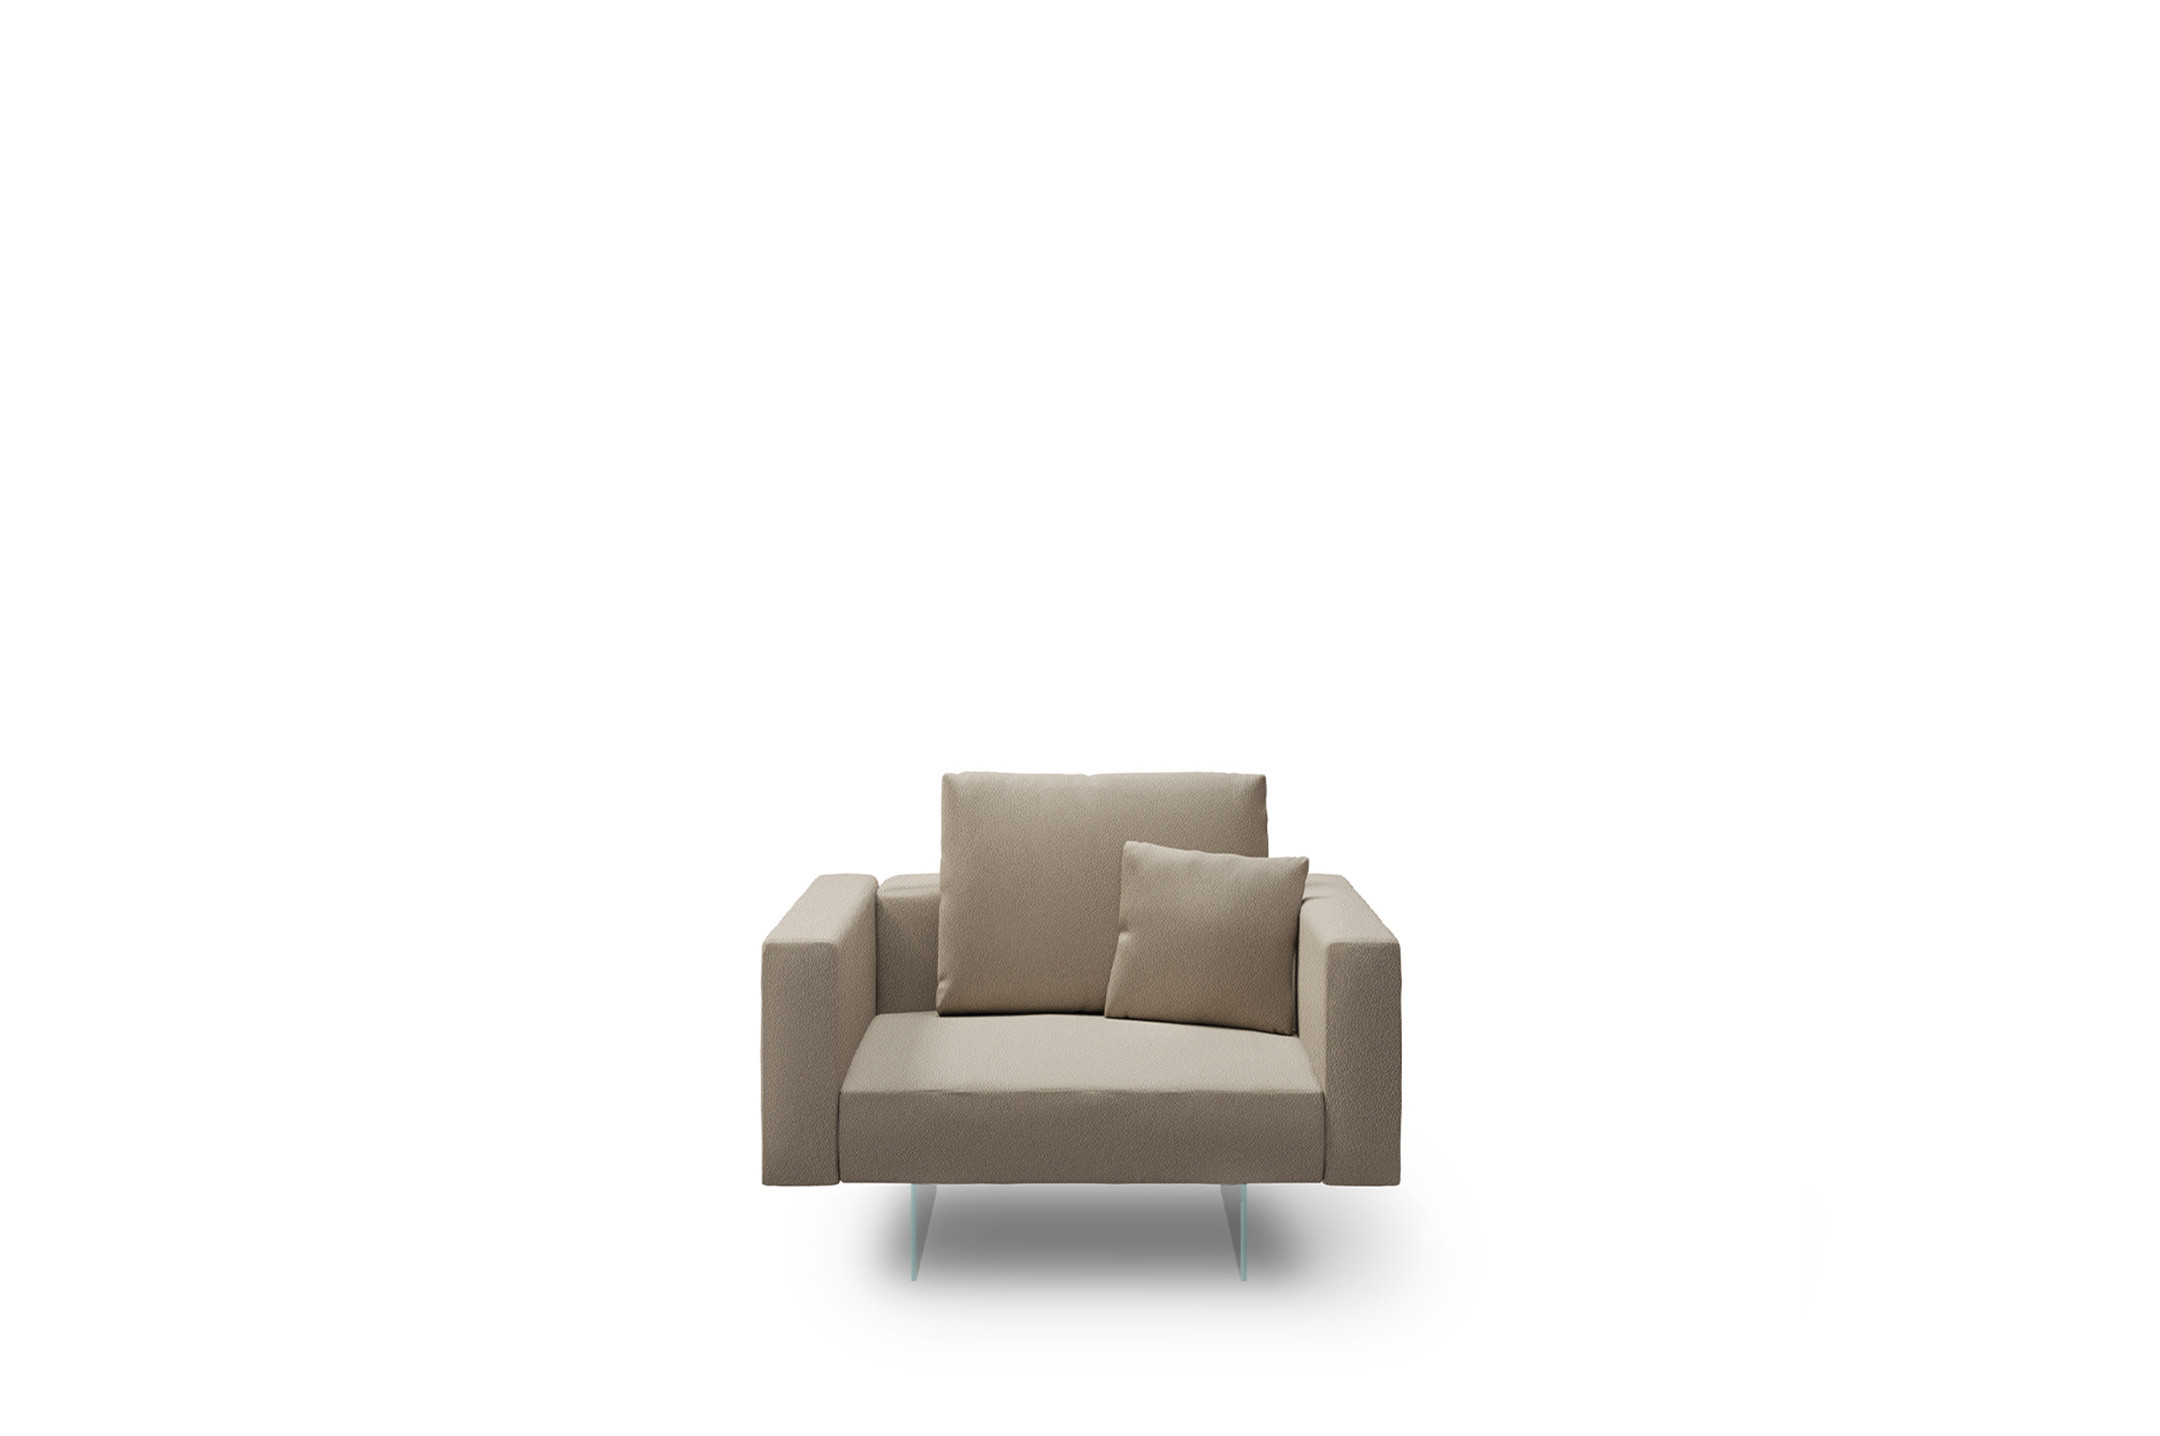 Scegli le armchairs da configurare